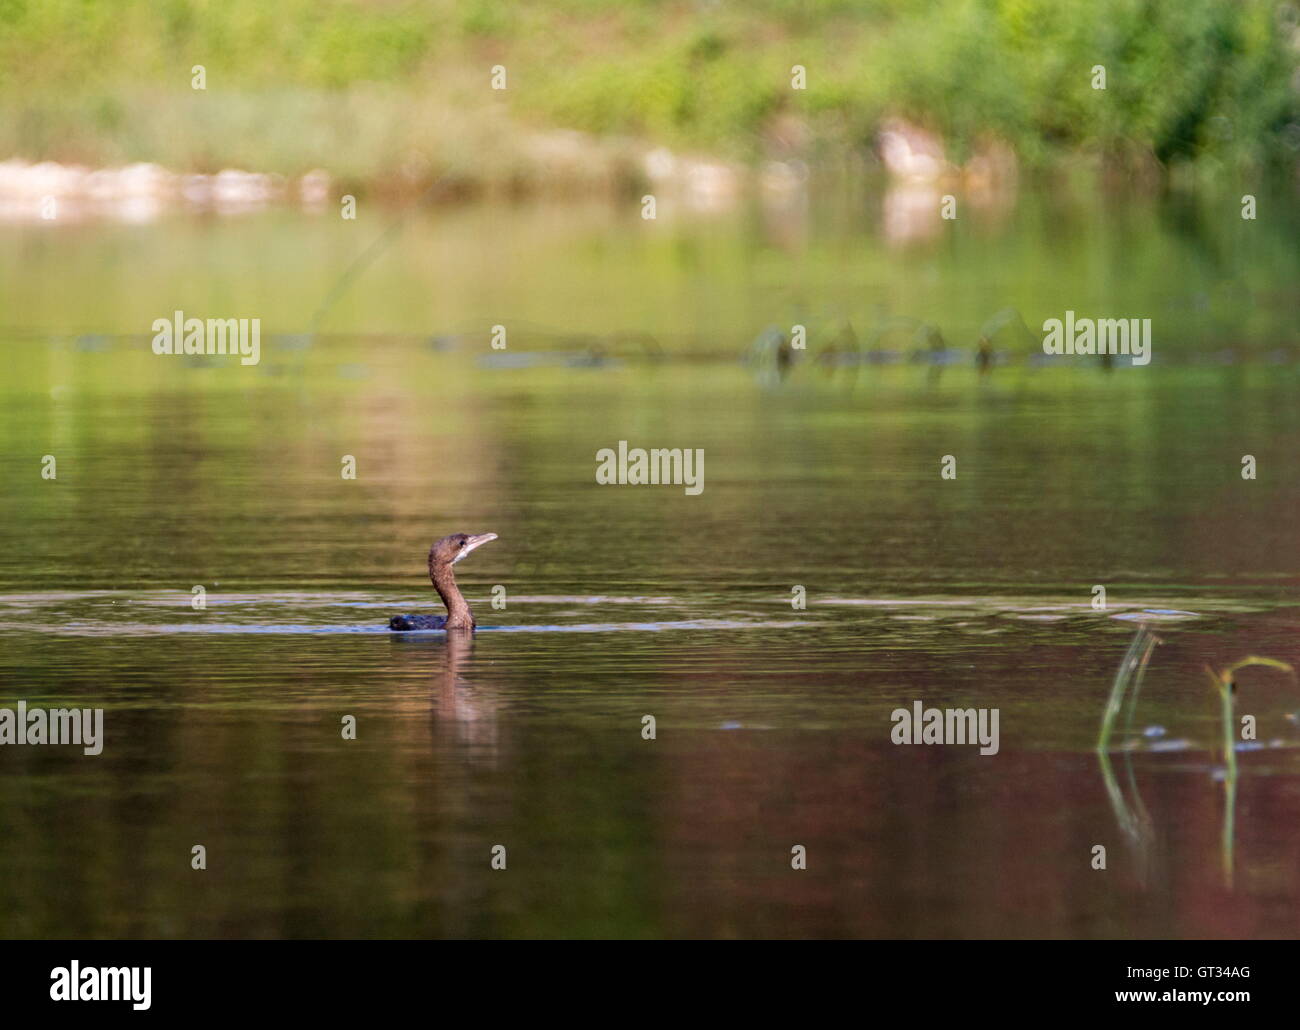 Kormoran Vogel schwimmen friedlich in grüner Natur Hintergrund Stockfoto